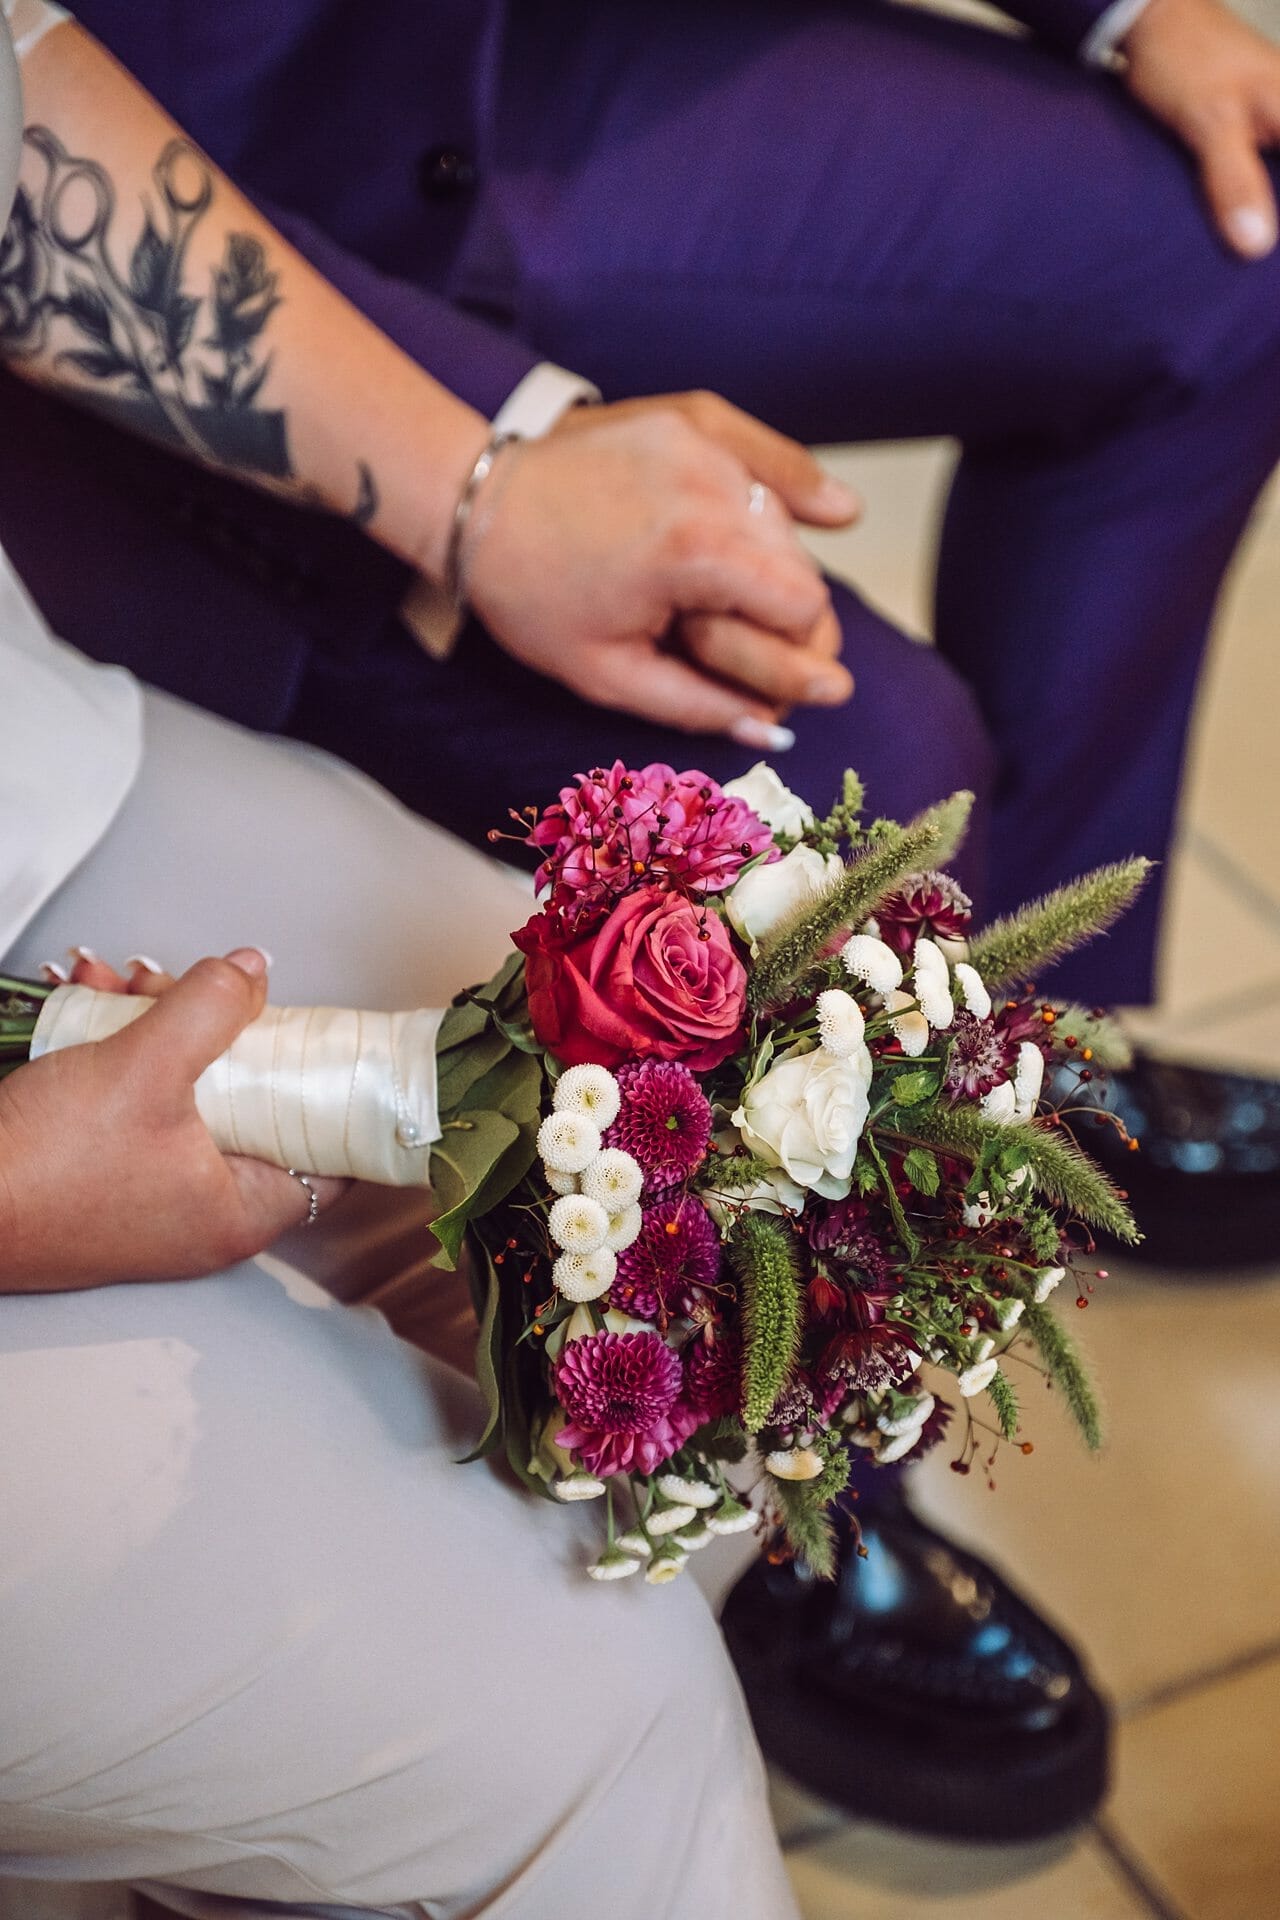 Eine Braut und ein Bräutigam halten einen Blumenstrauß in der Hand.